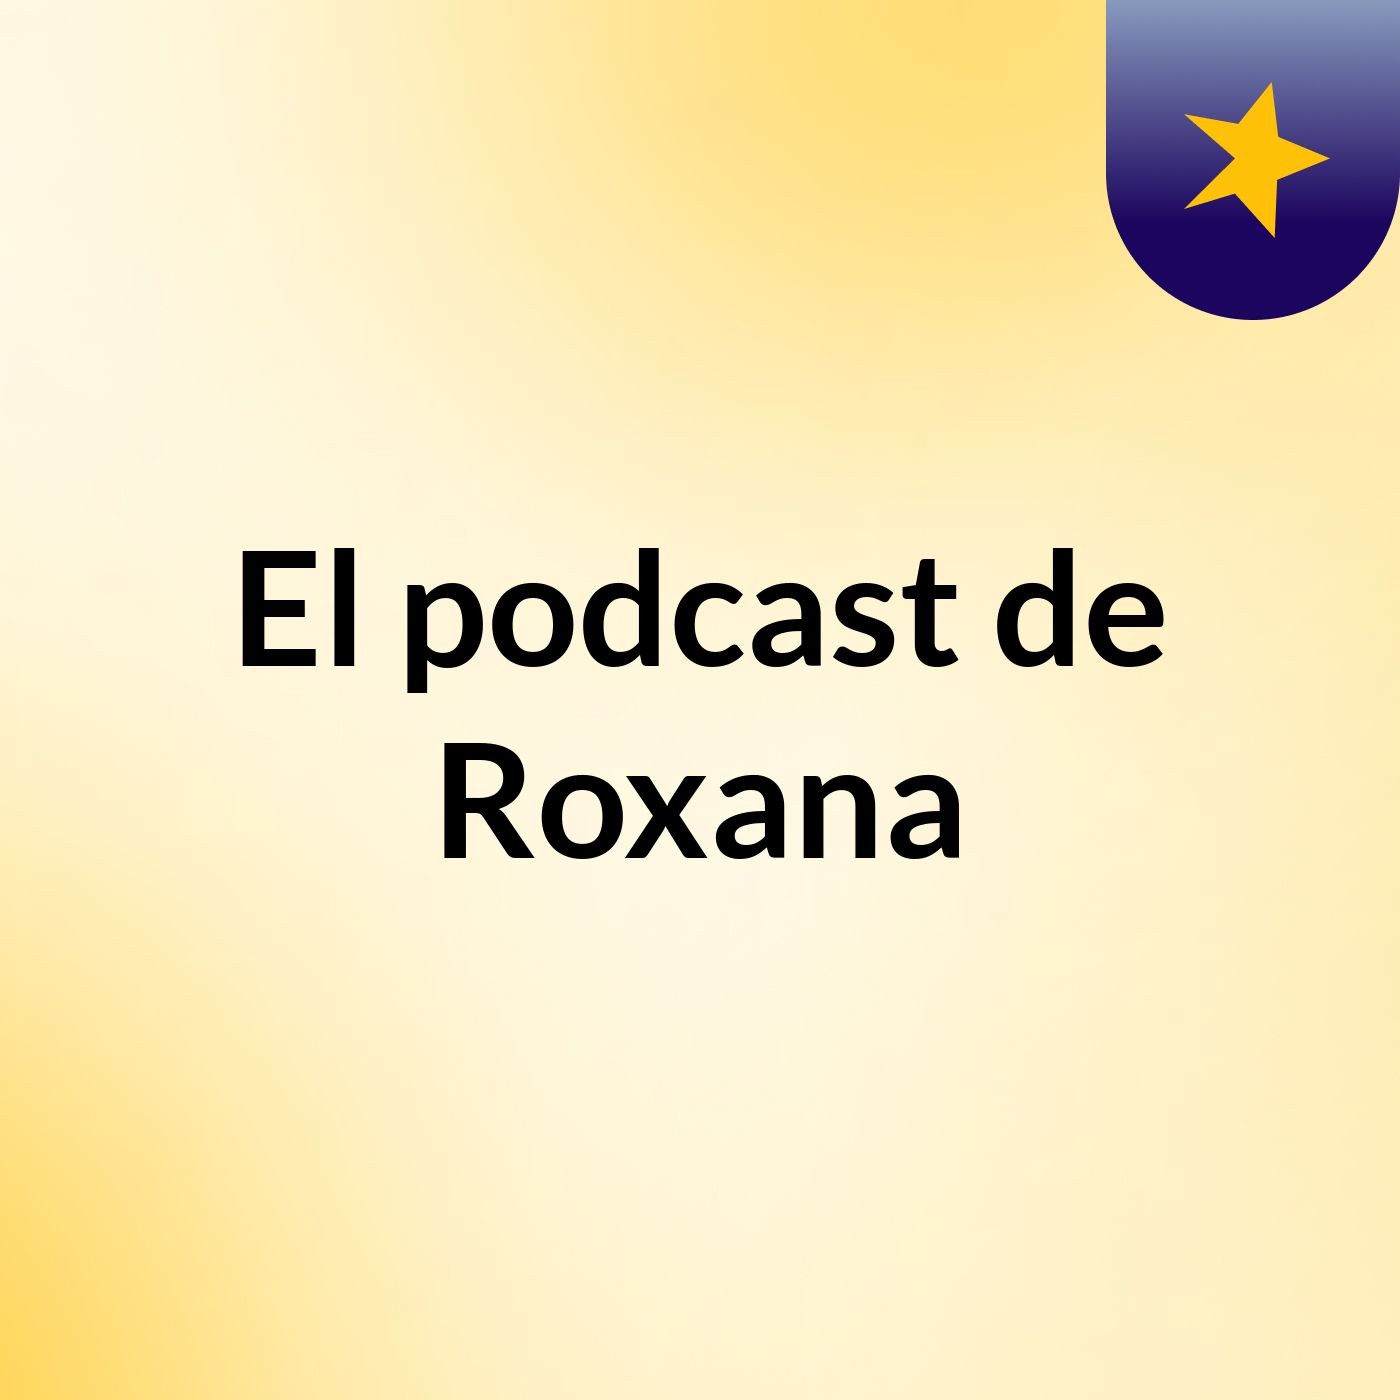 El podcast de Roxana